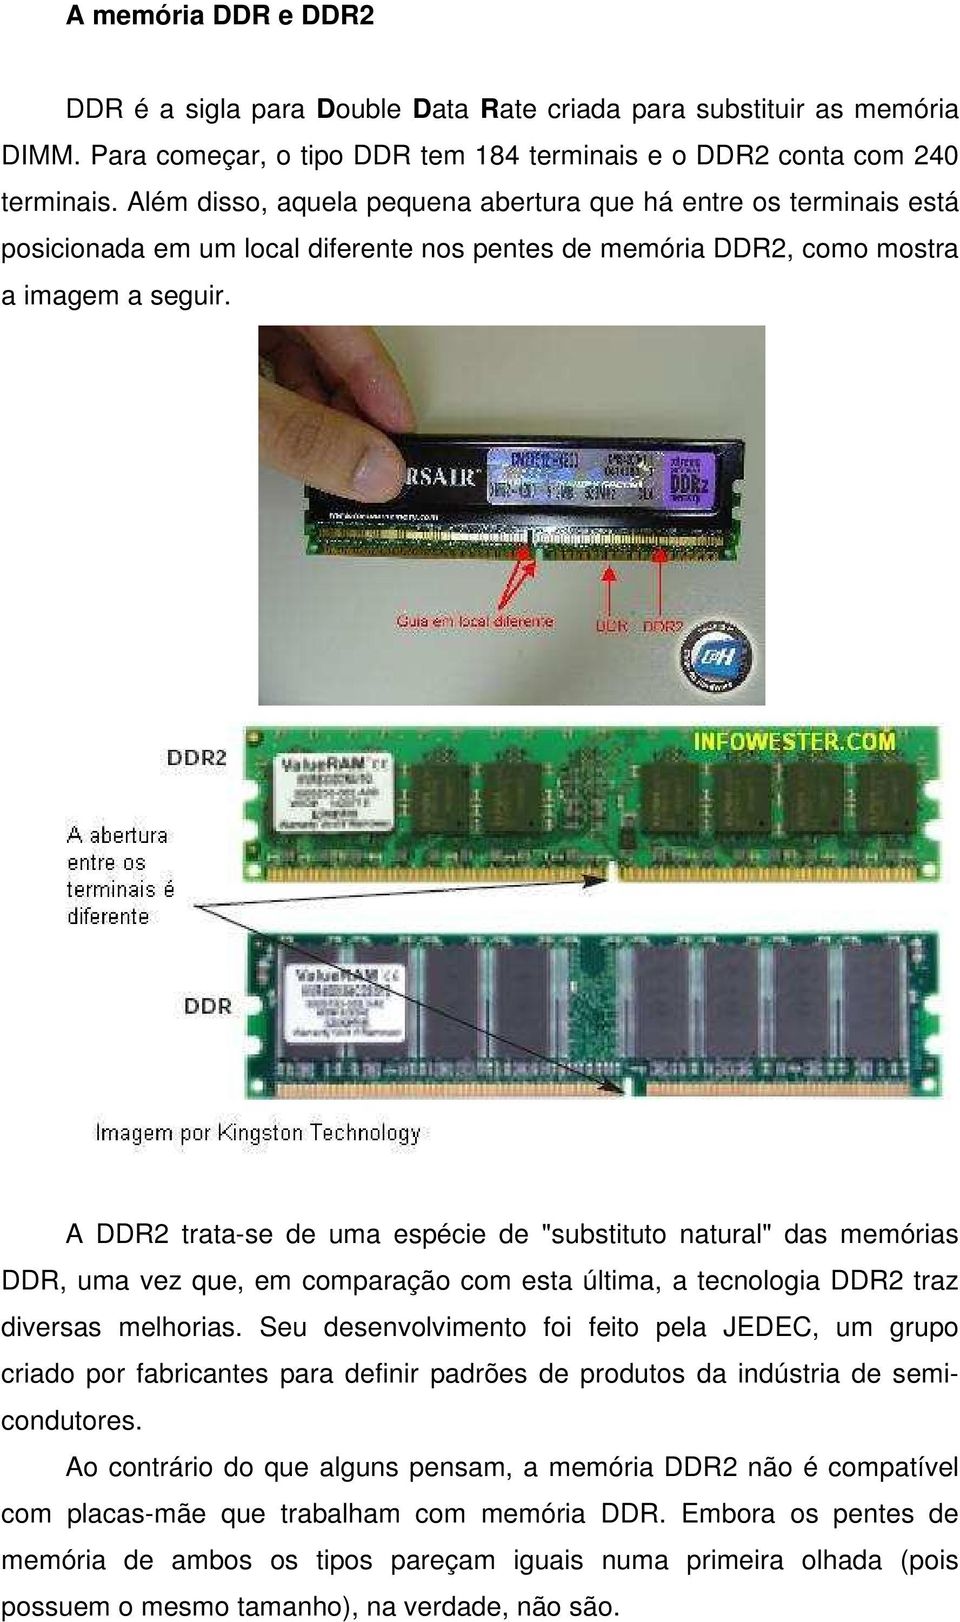 A DDR2 trata-se de uma espécie de "substituto natural" das memórias DDR, uma vez que, em comparação com esta última, a tecnologia DDR2 traz diversas melhorias.